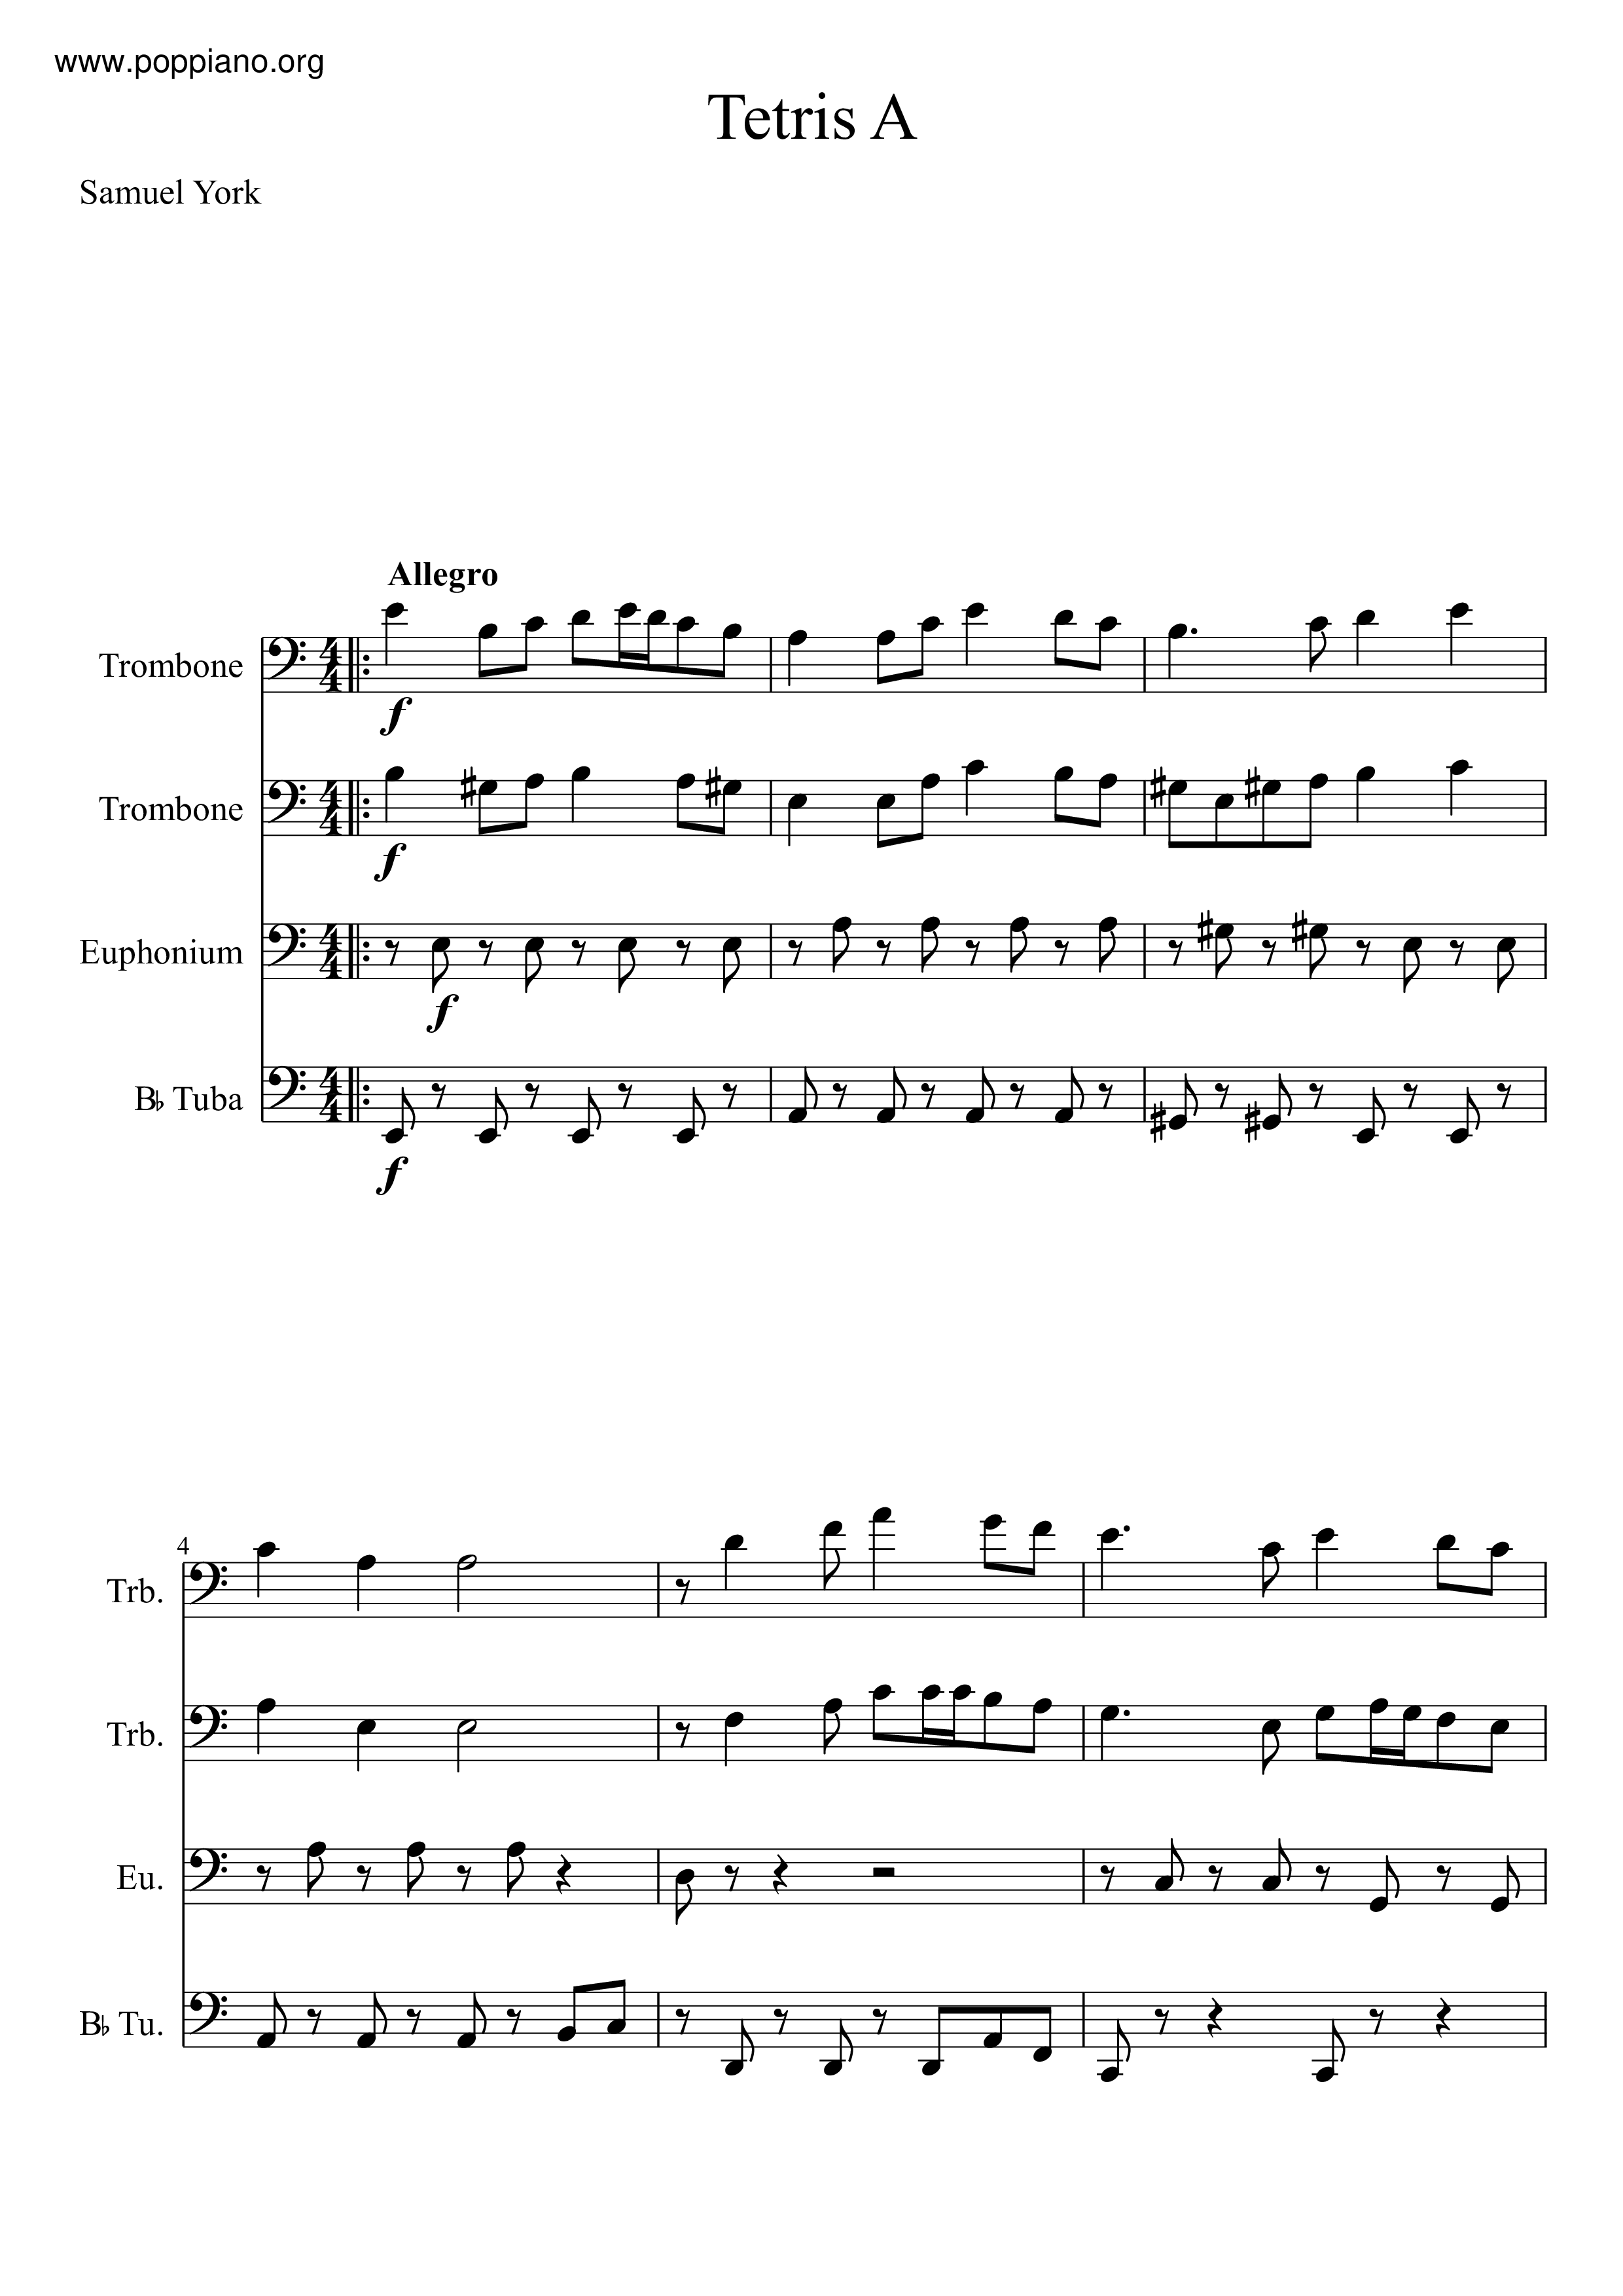 ☆ Tetris-Theme A Sheet Music pdf, - Free Score Download ☆